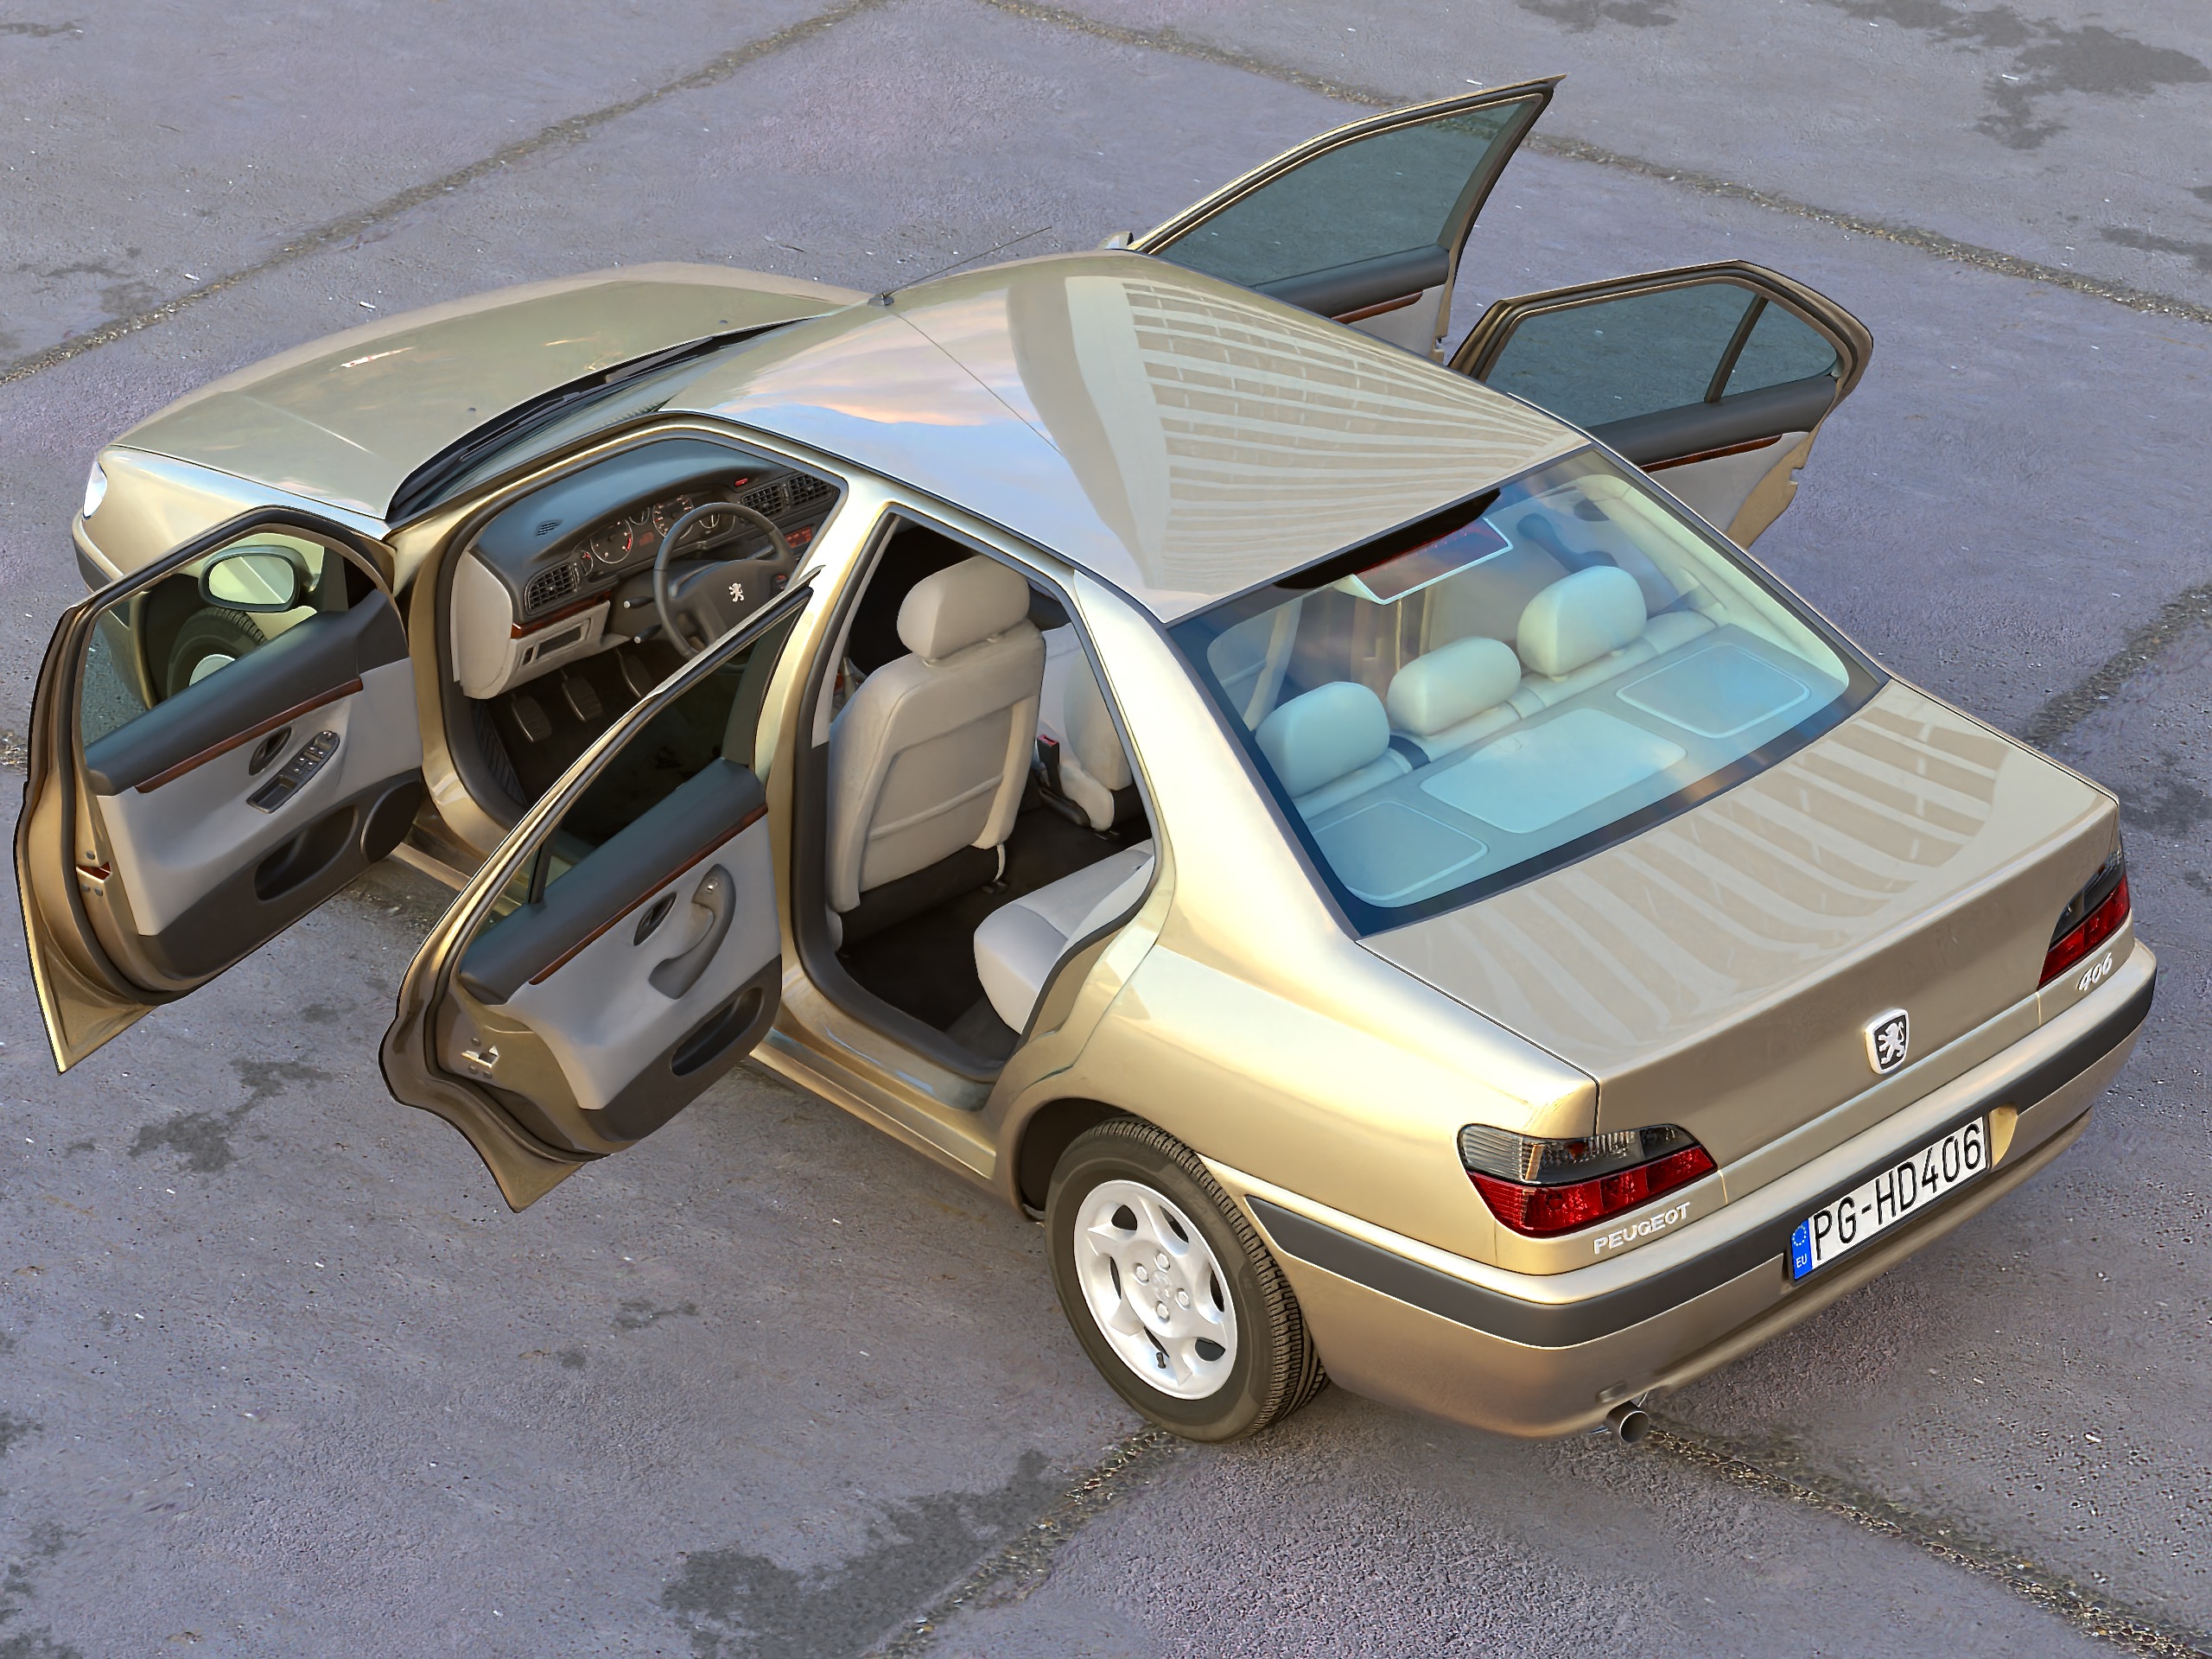 Peugeot 406 sedan 1995 3D Model $149 - .max .unknown .obj .ma .lwo